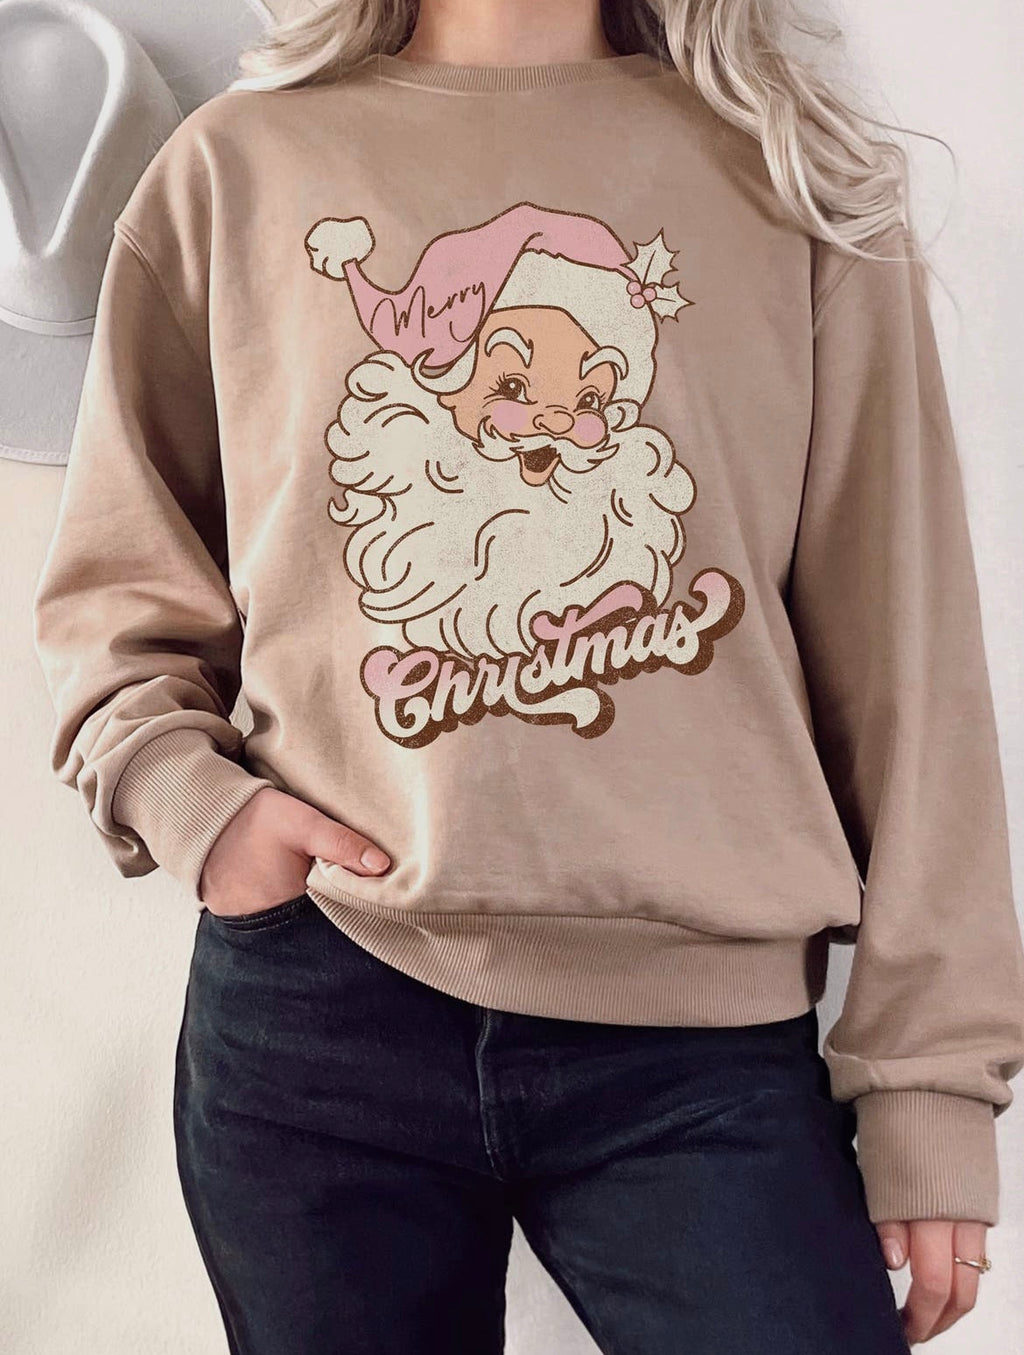 The Vintage Santa Sweatshirt